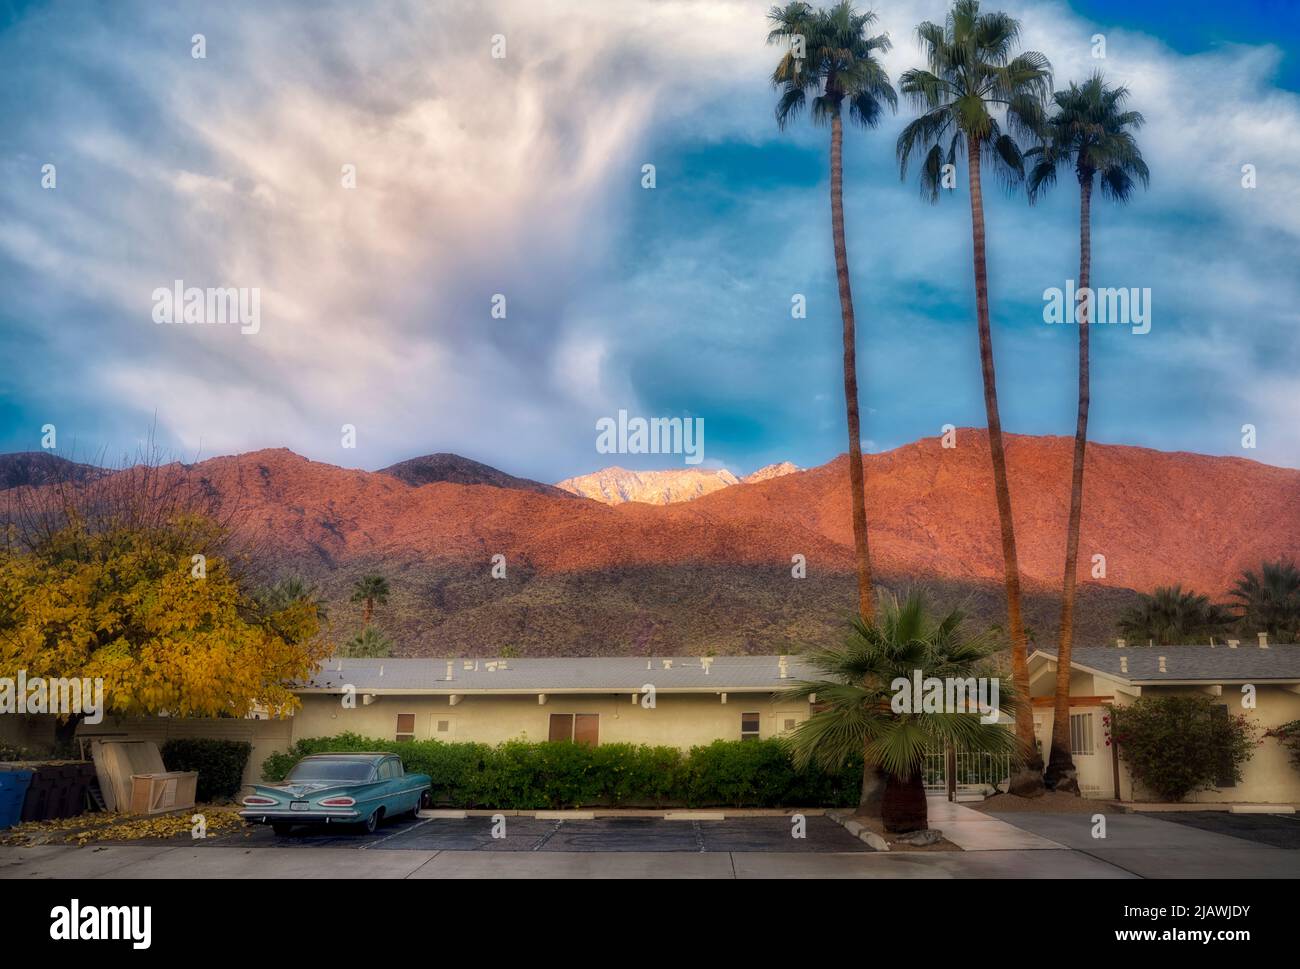 Neige, lever du soleil, vieille voiture, hôtel et palmiers sur les montagnes de San Jacinto. Palm Springs, Californie Banque D'Images